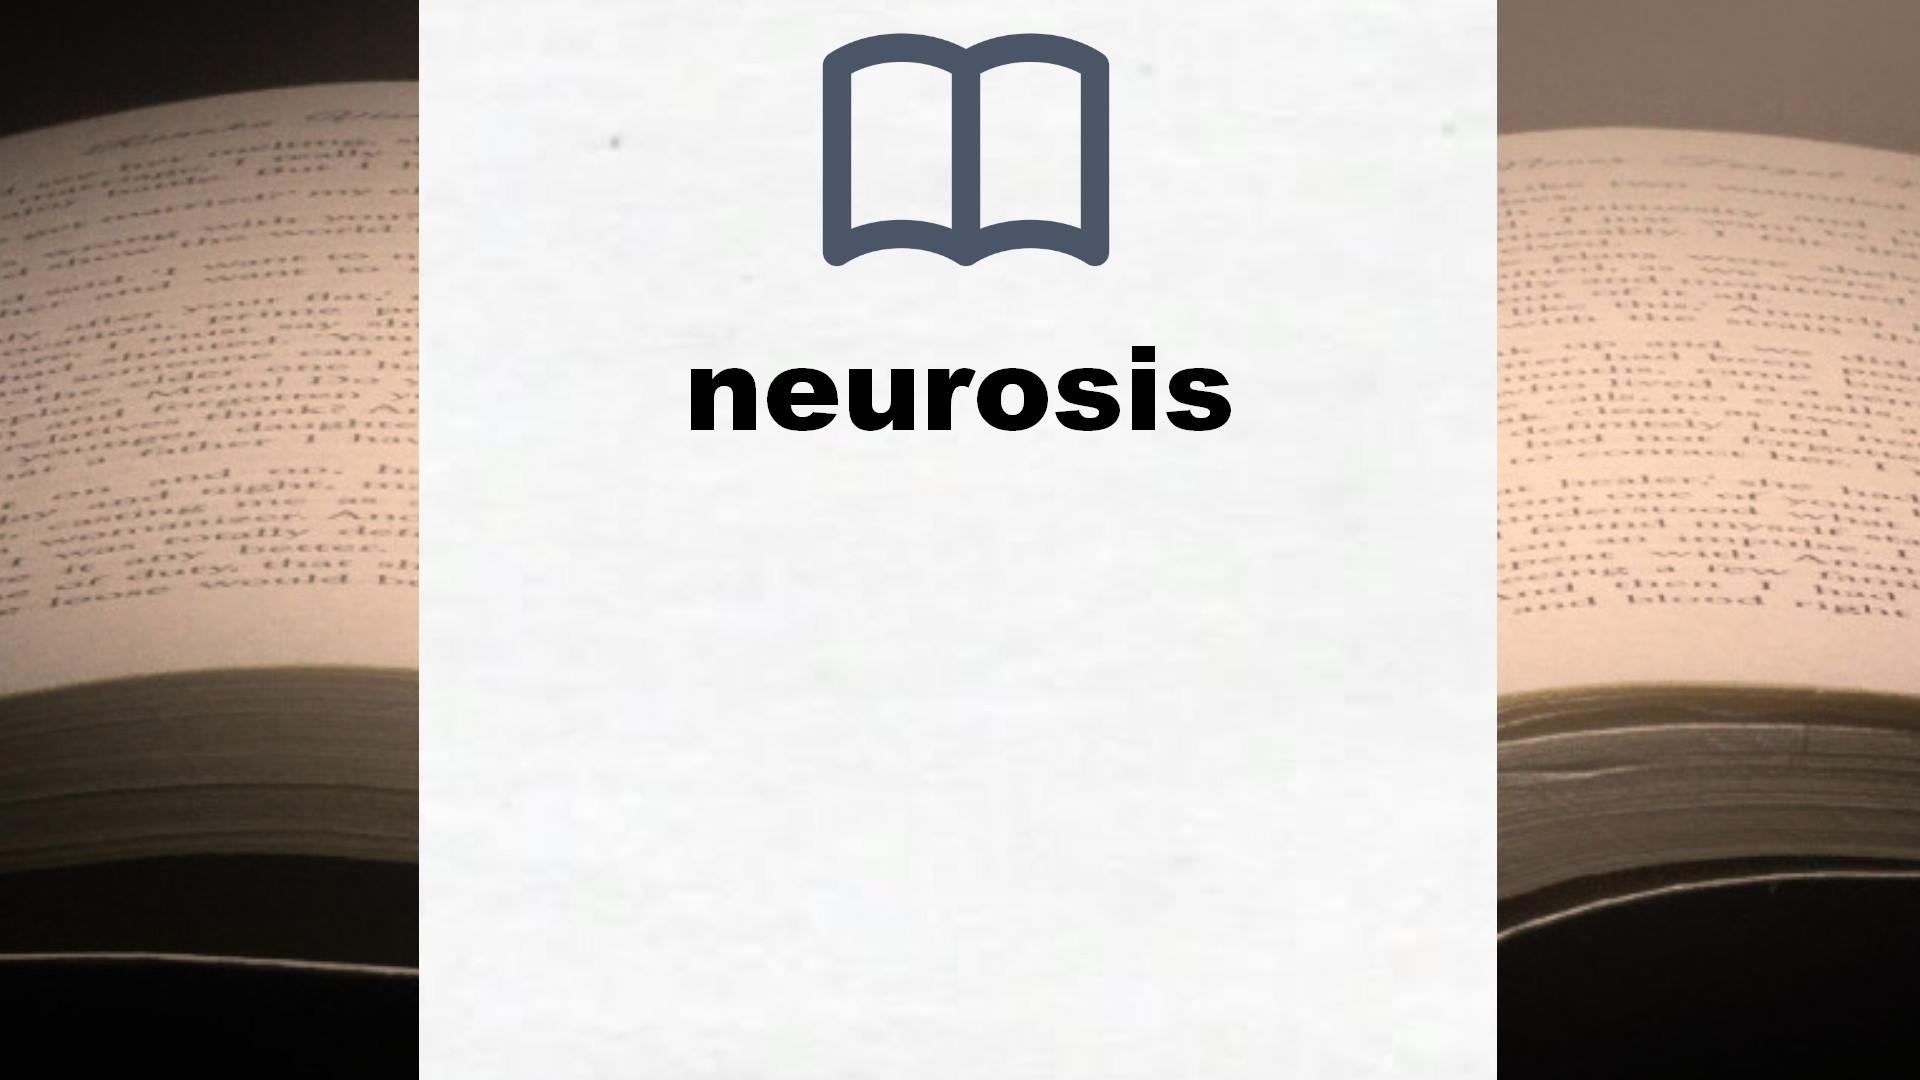 Libros sobre neurosis